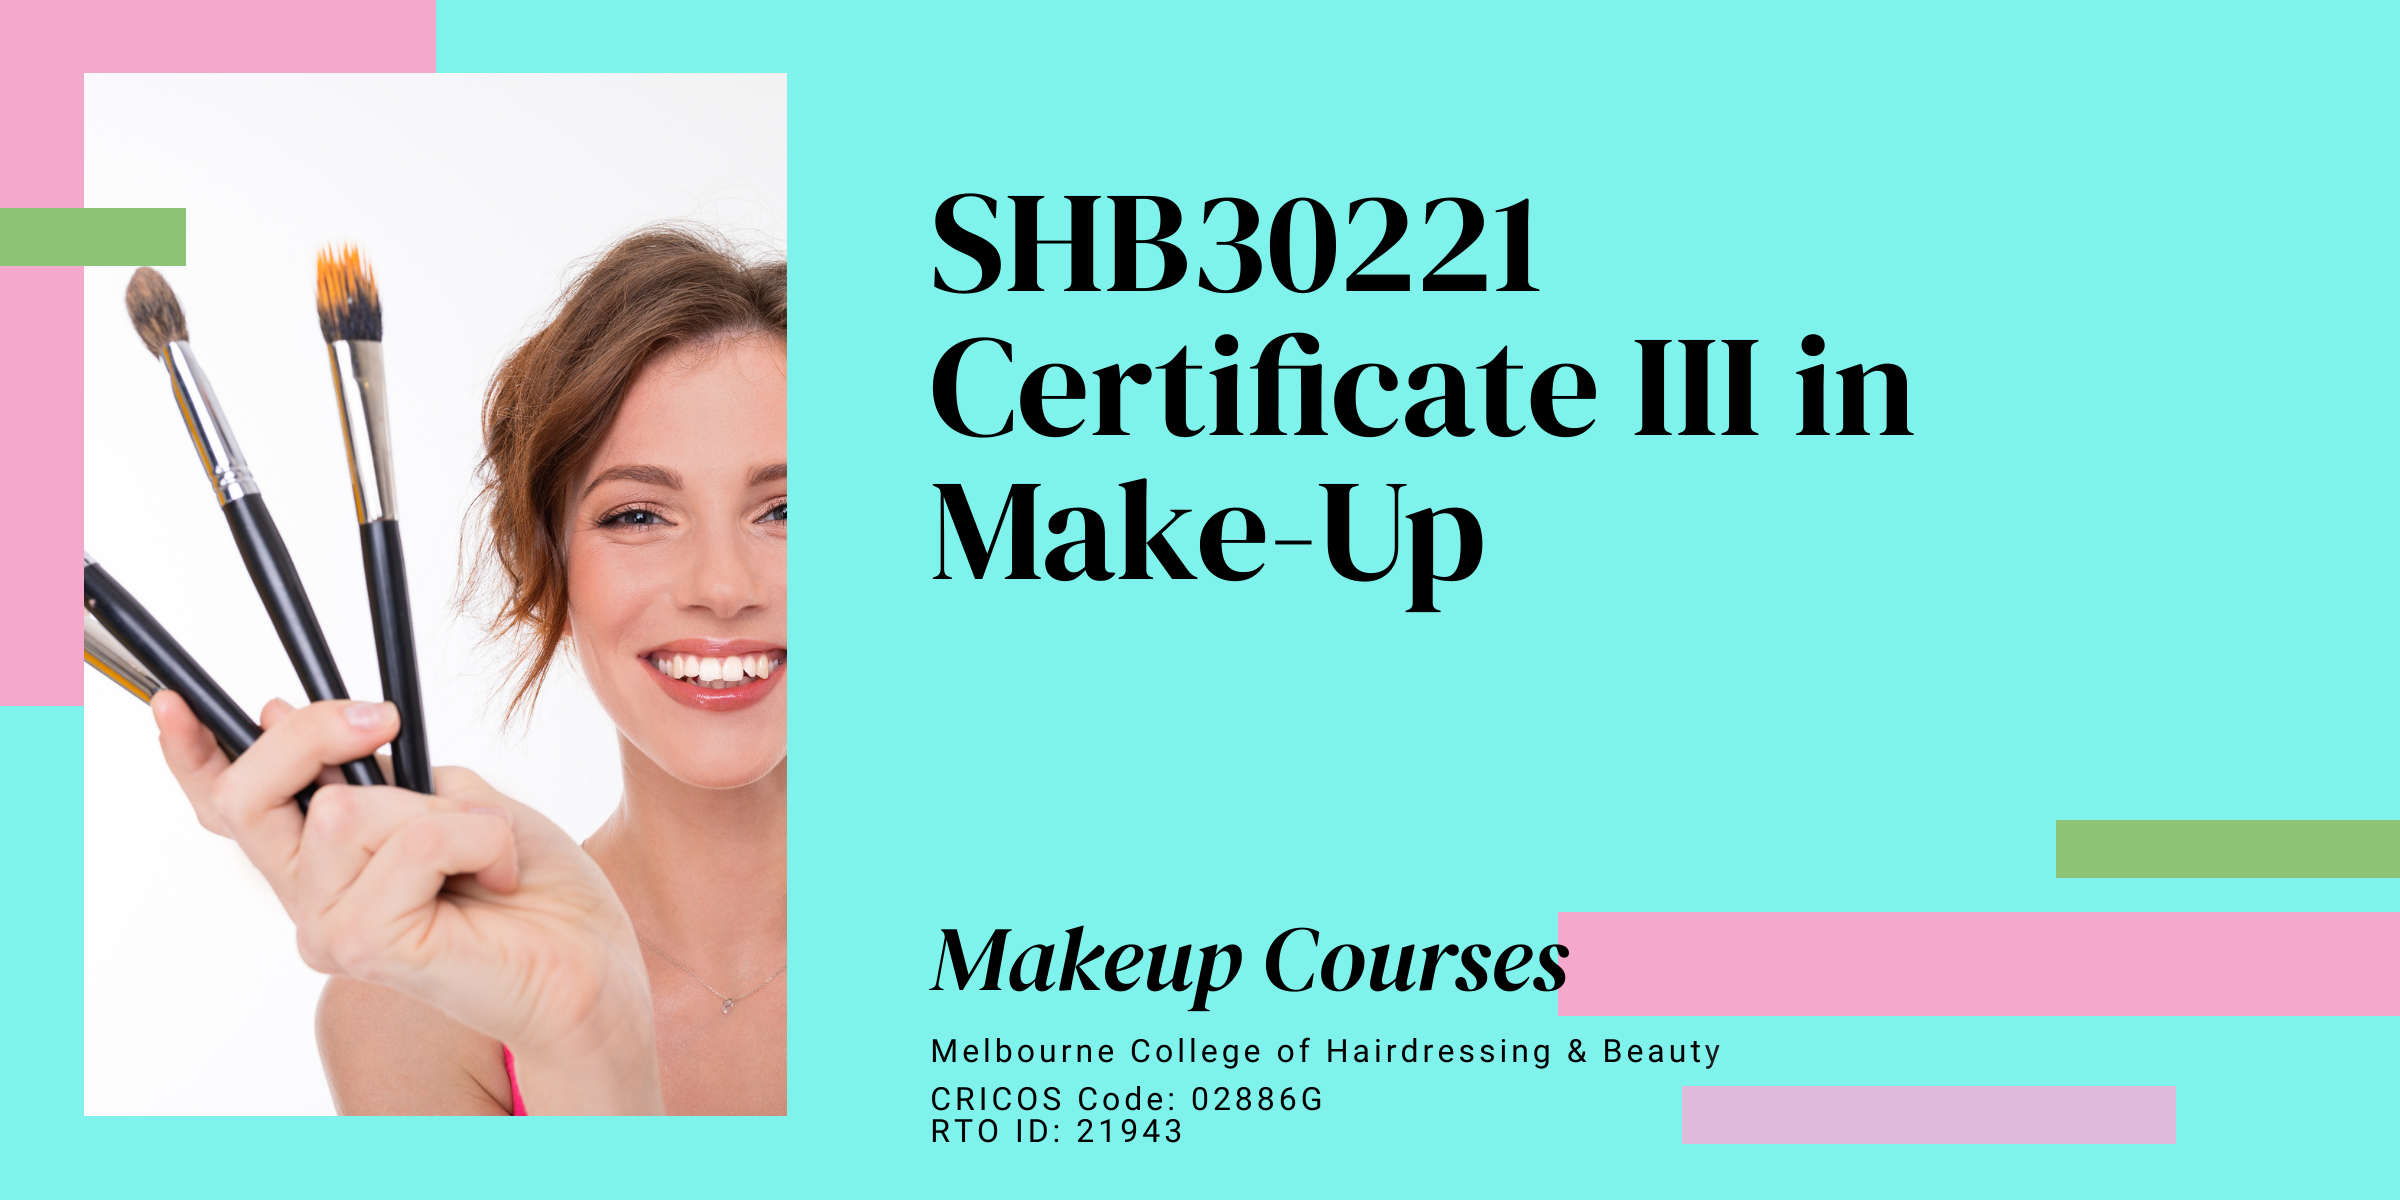 Shb30221 Certificate Iii In Make Up